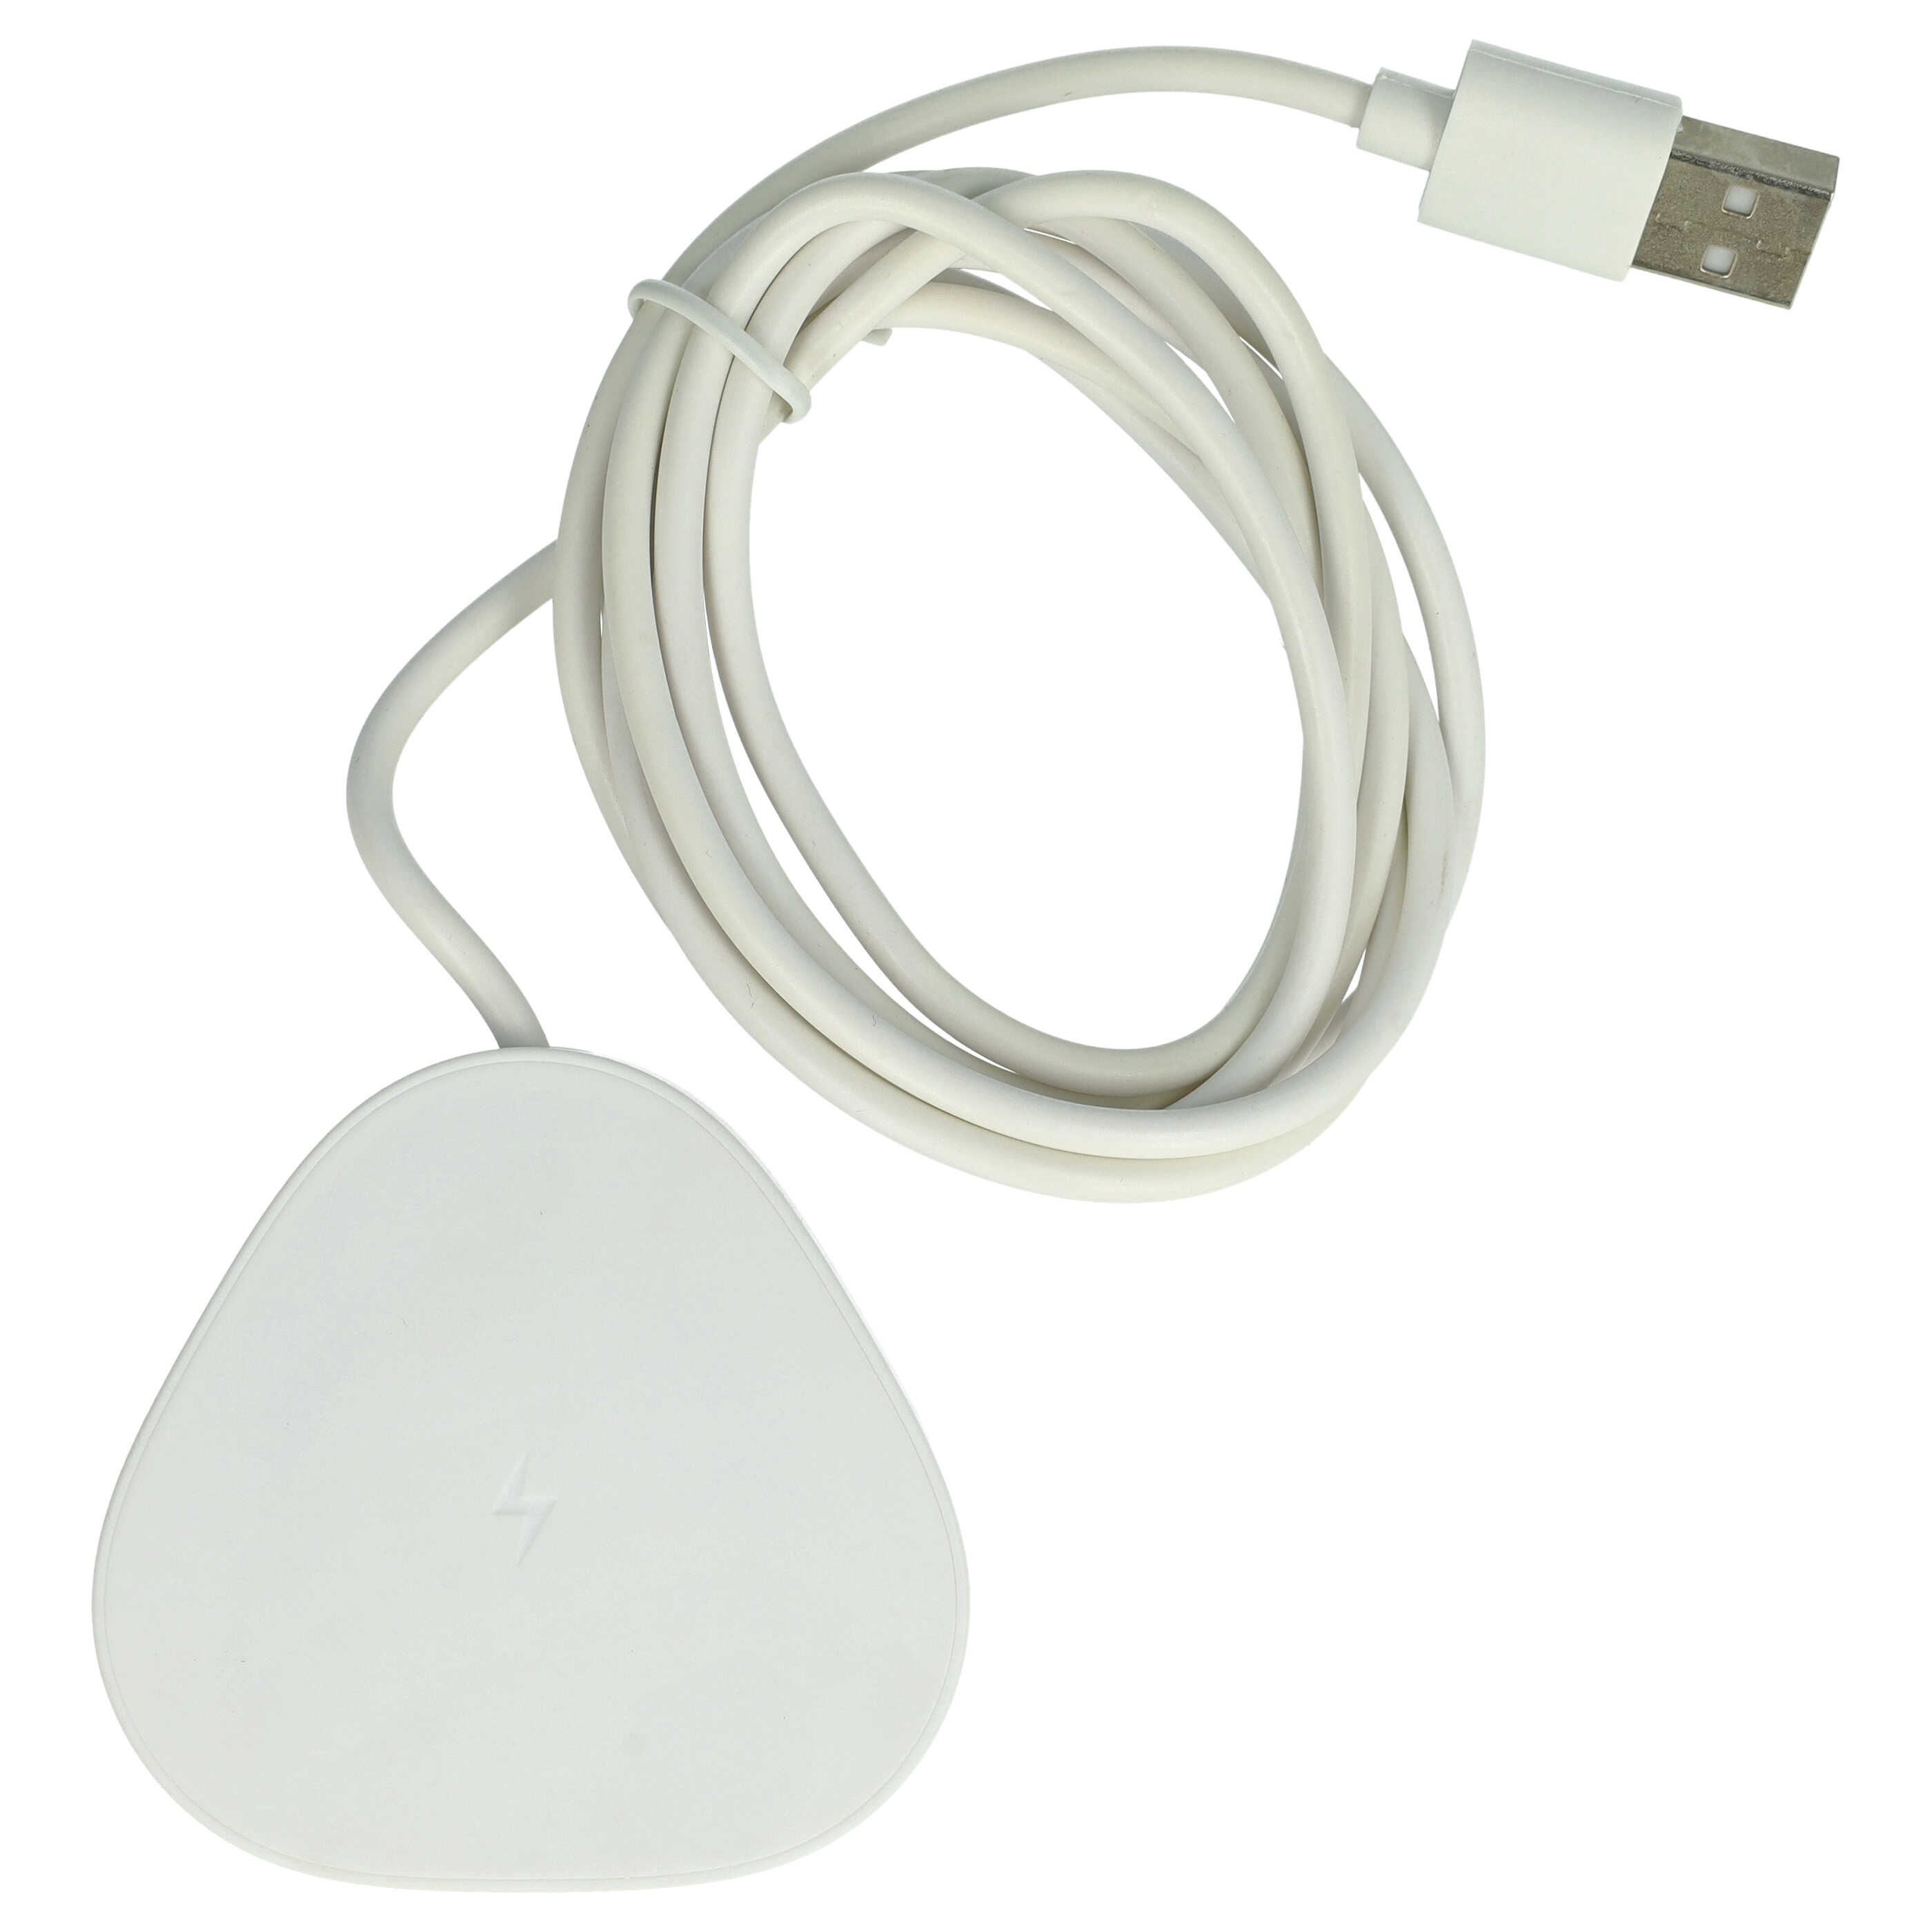 Ładowarka do głośnika Sonos zamiennik Sonos Wireless Charger LPS-05WB-I - podstawka + kabel, 145 cm, biały